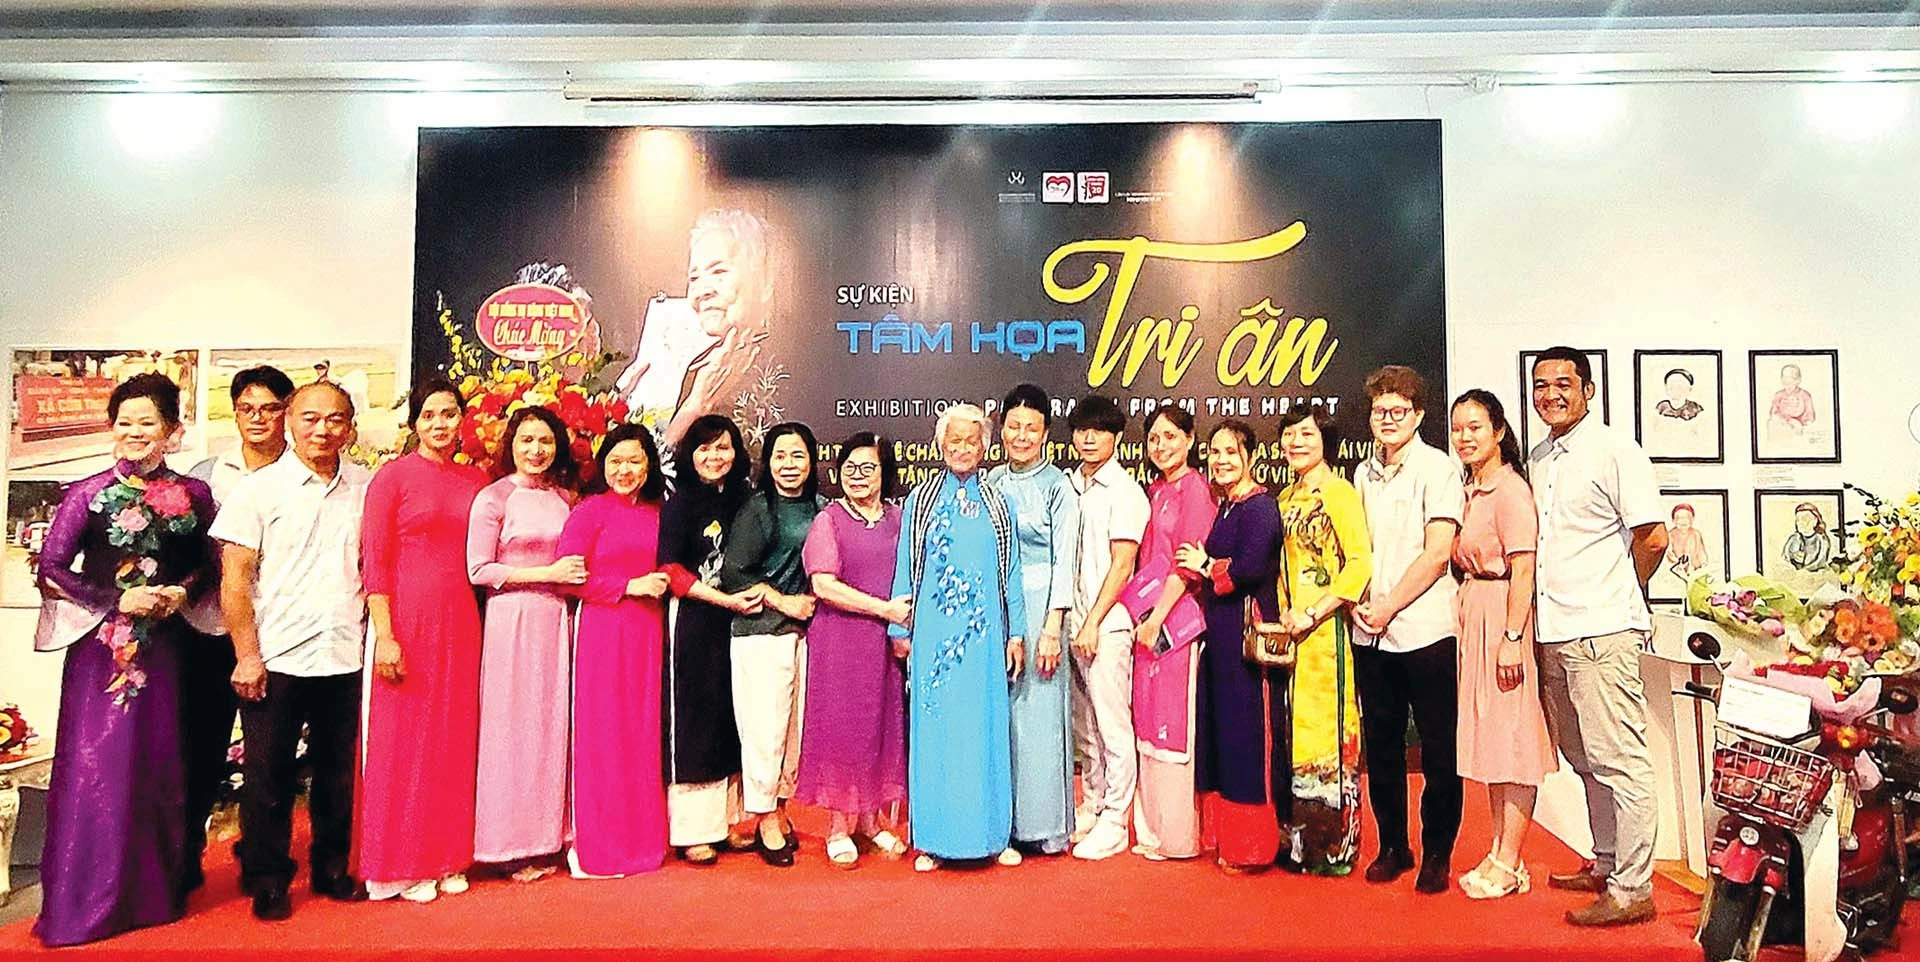 Họa sĩ Đặng Ái Việt mặc áo dài màu xanh (ở giữa) chụp ảnh kỷ niệm với các đại biểu đến dự sự kiện.  (Ảnh: George Newman)